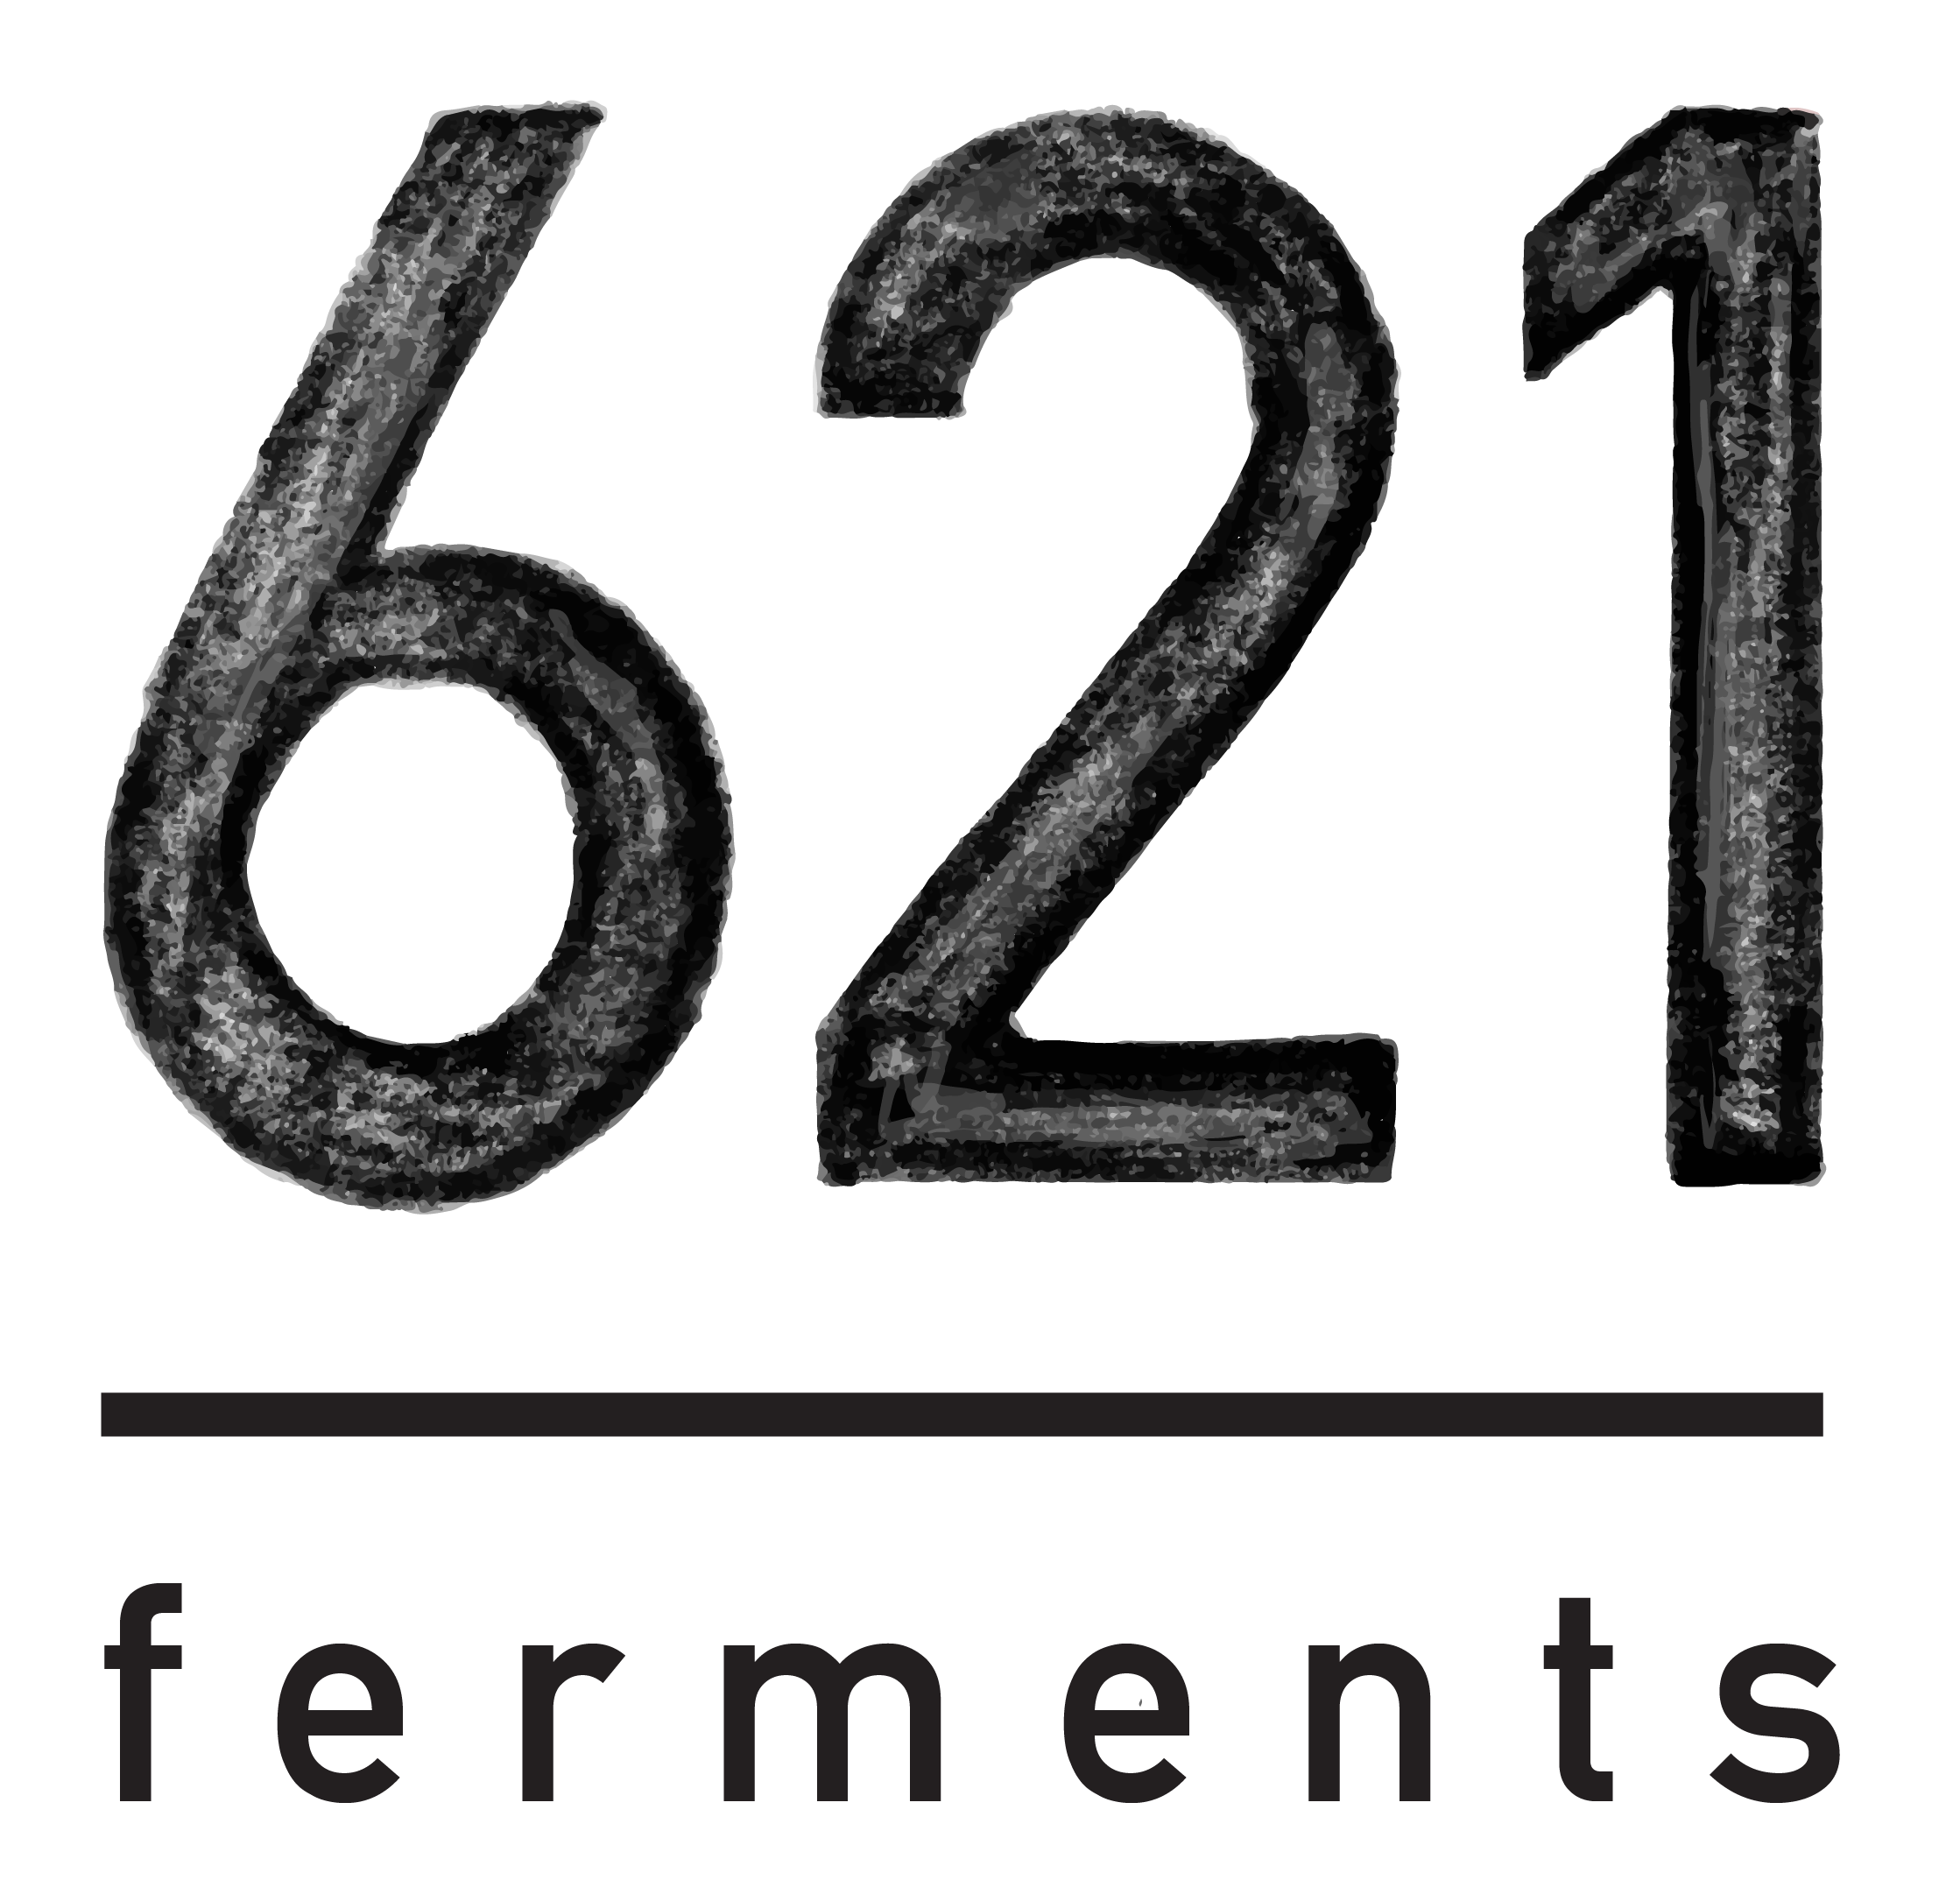 621 Ferments